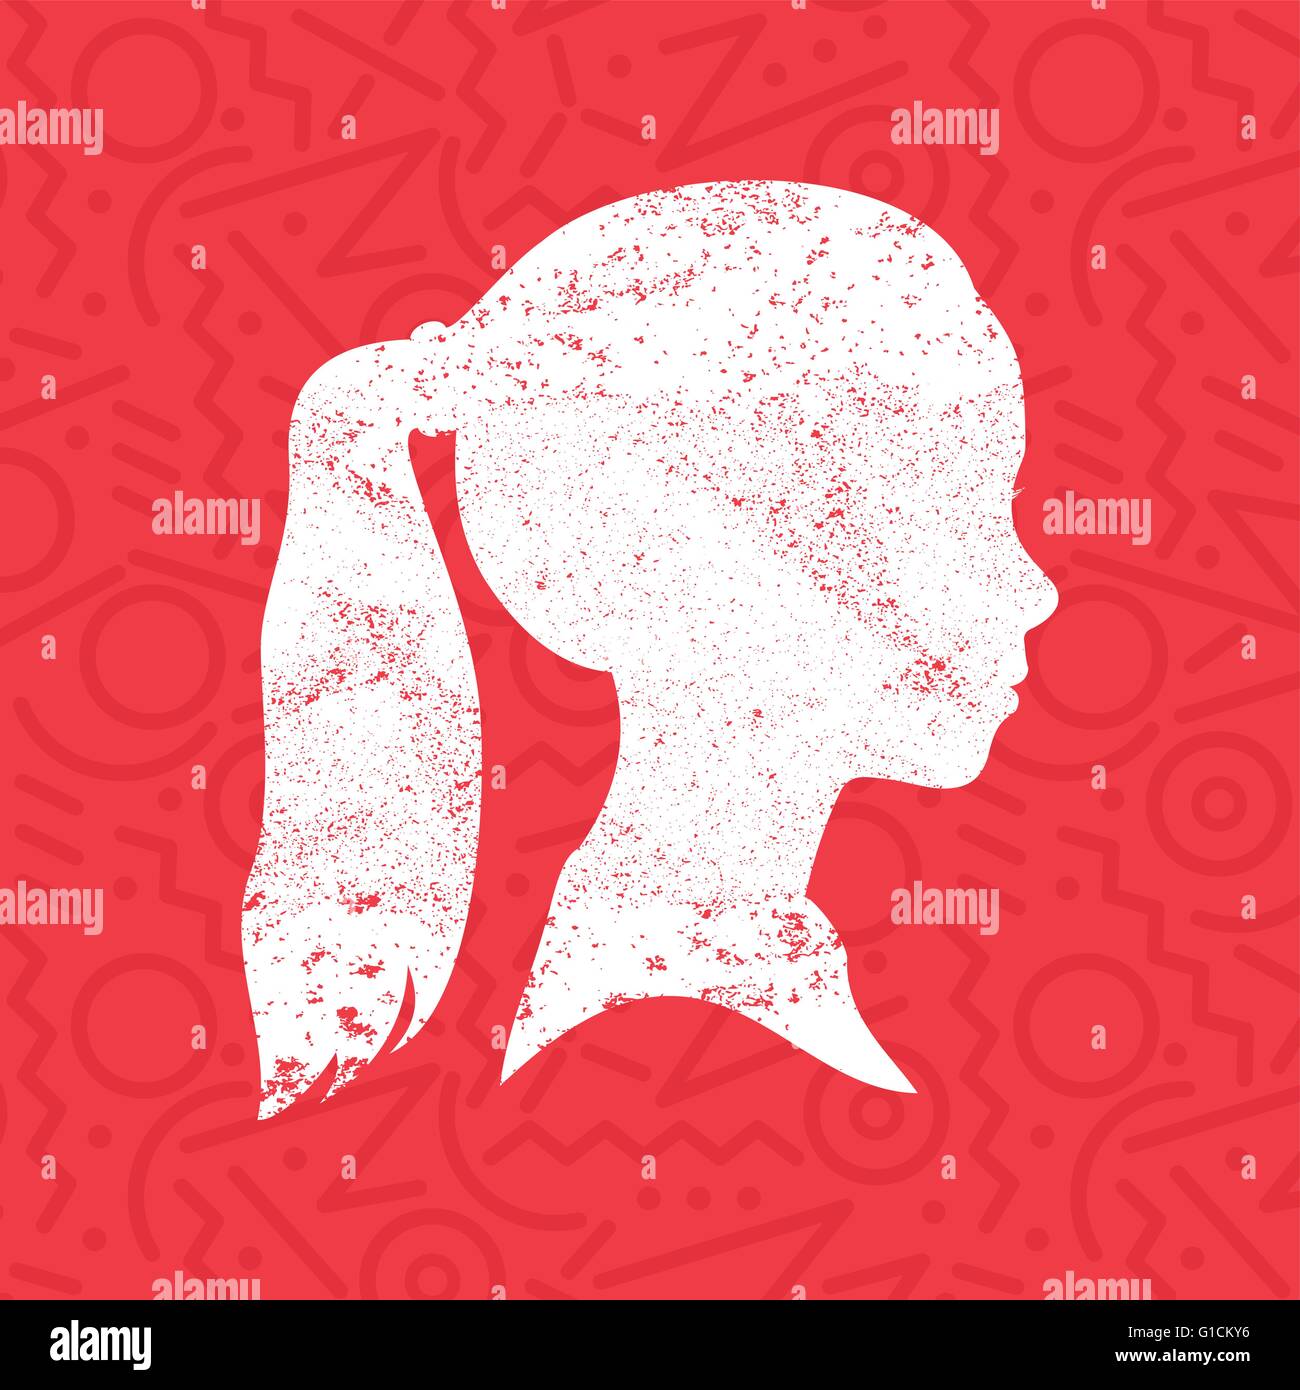 Kleine Mädchen Gesicht Profil Silhouette mit Pferdeschwanz Frisur im Grunge Texturen übermalen bunten roten Hintergrund, Kind Kopf Stock Vektor